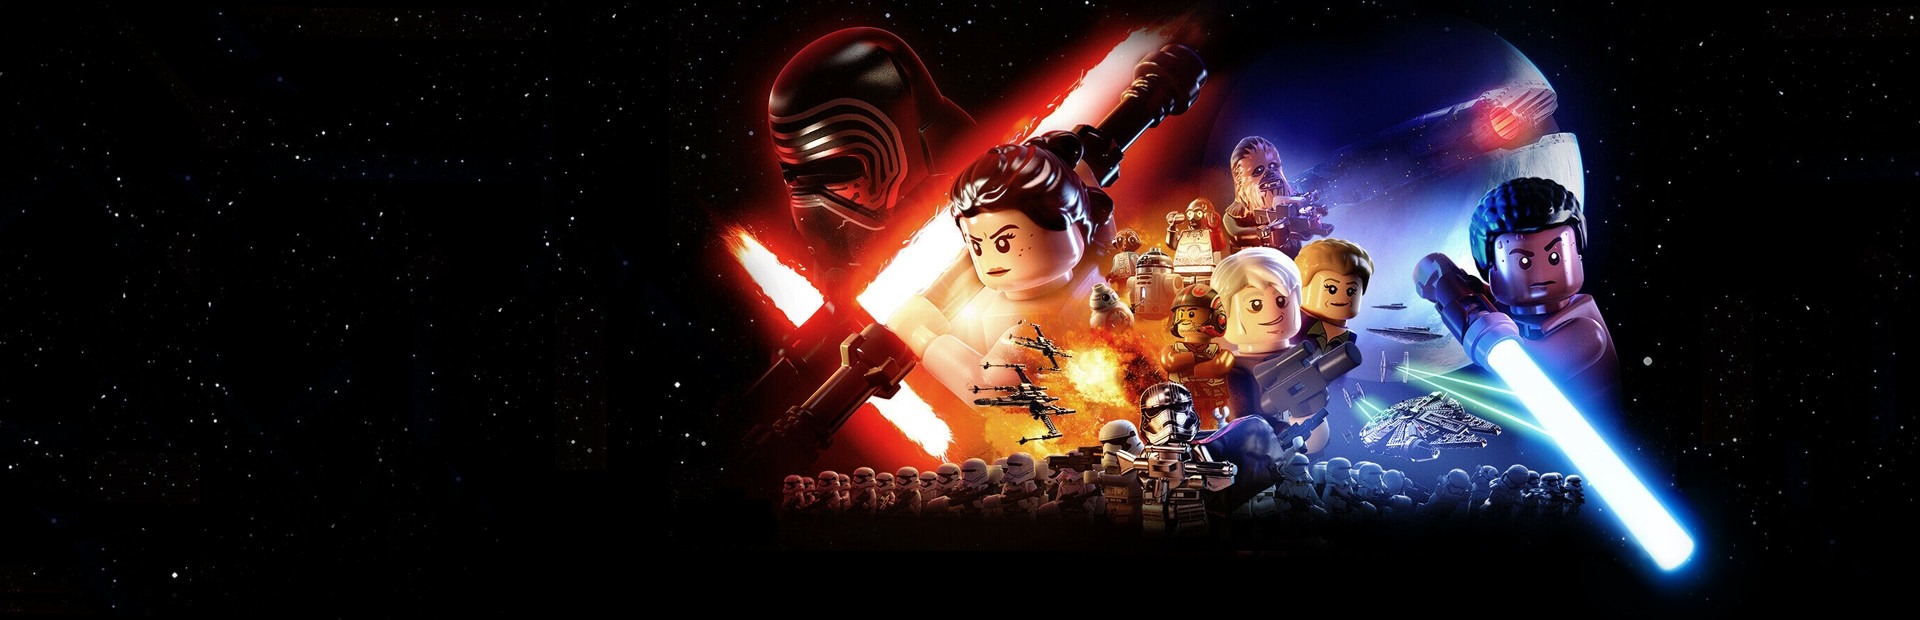 LEGO® Star Wars™ : le Réveil de la Force